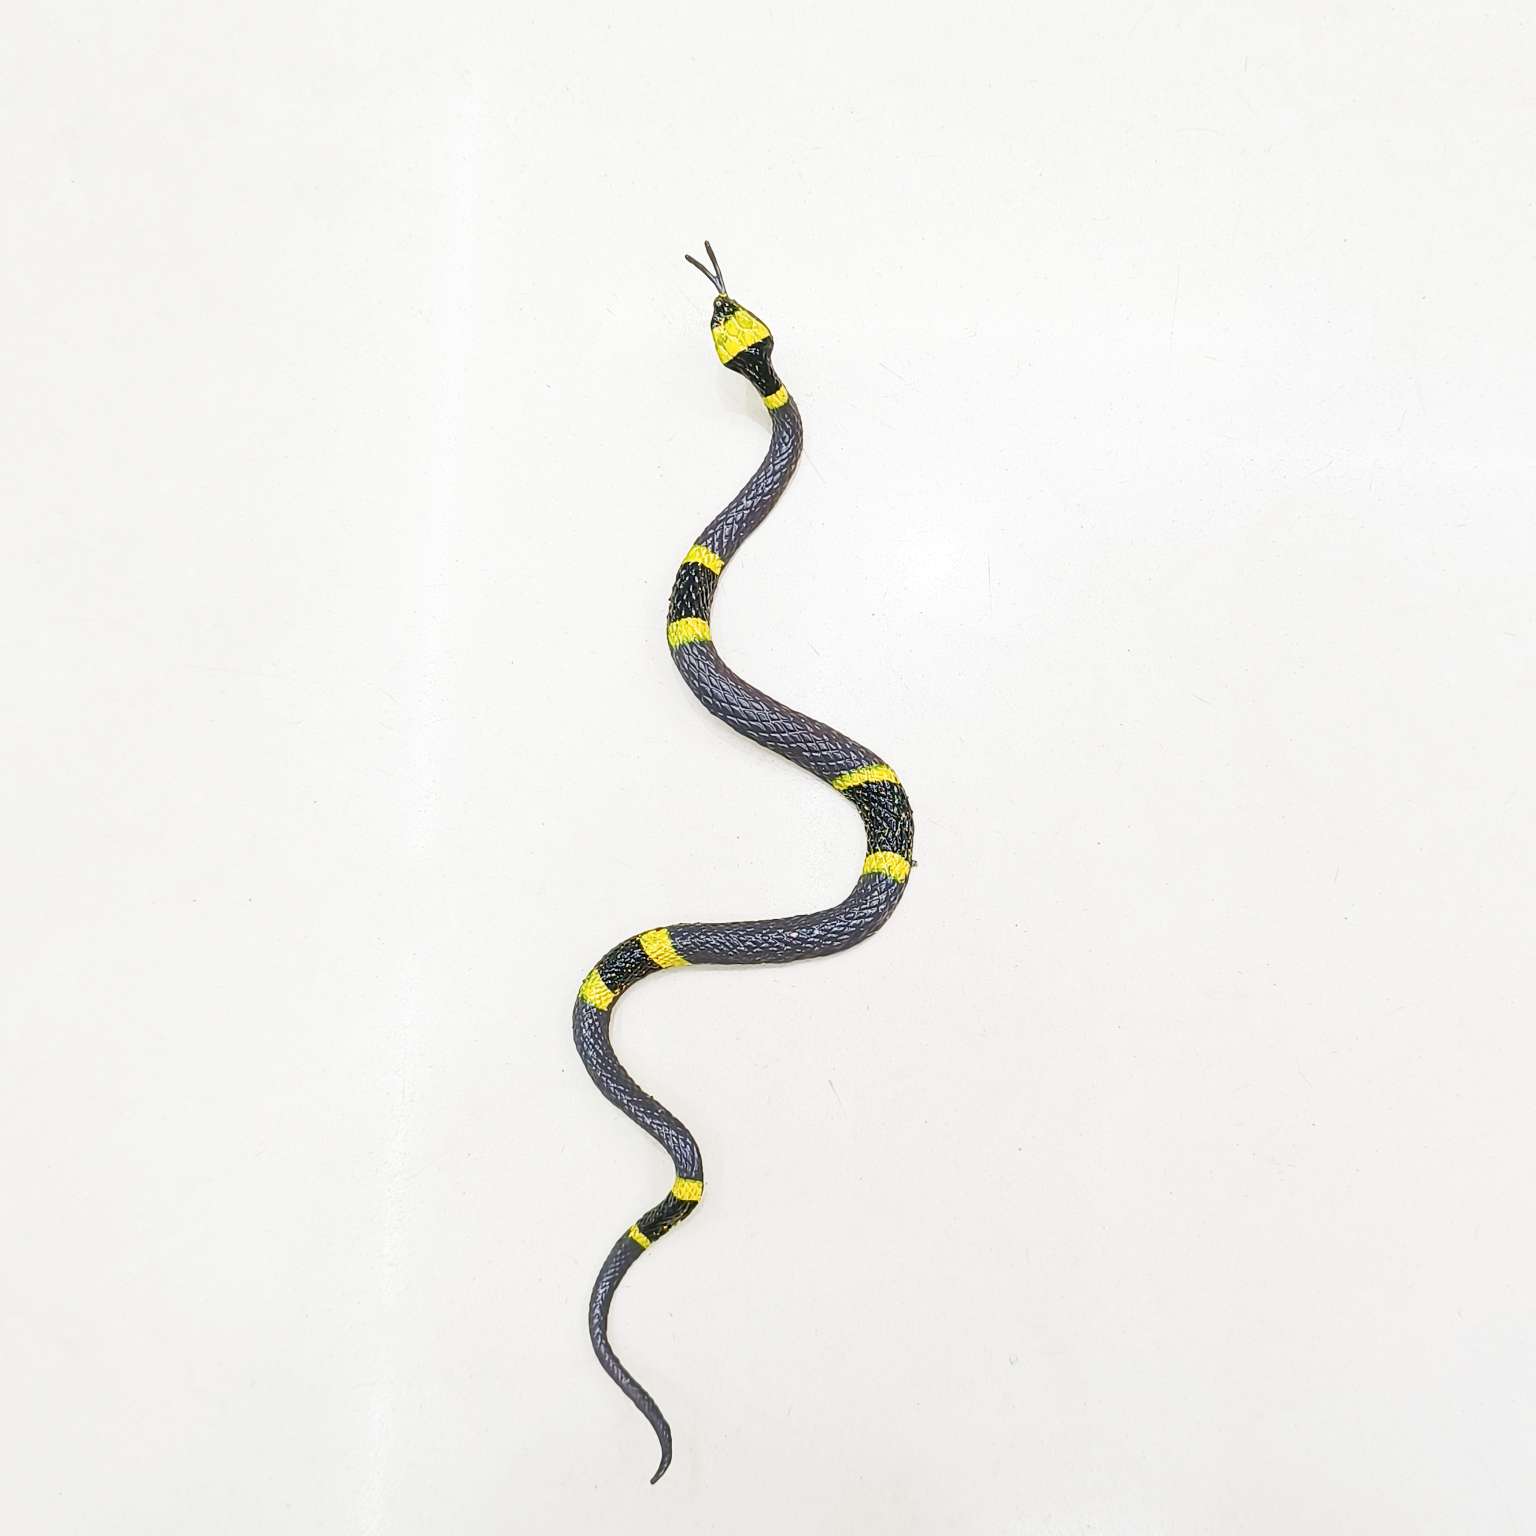 仿真动物蛇玩具塑胶模型爬行动物整蛊科教儿童认证摆件其他配件详情图4